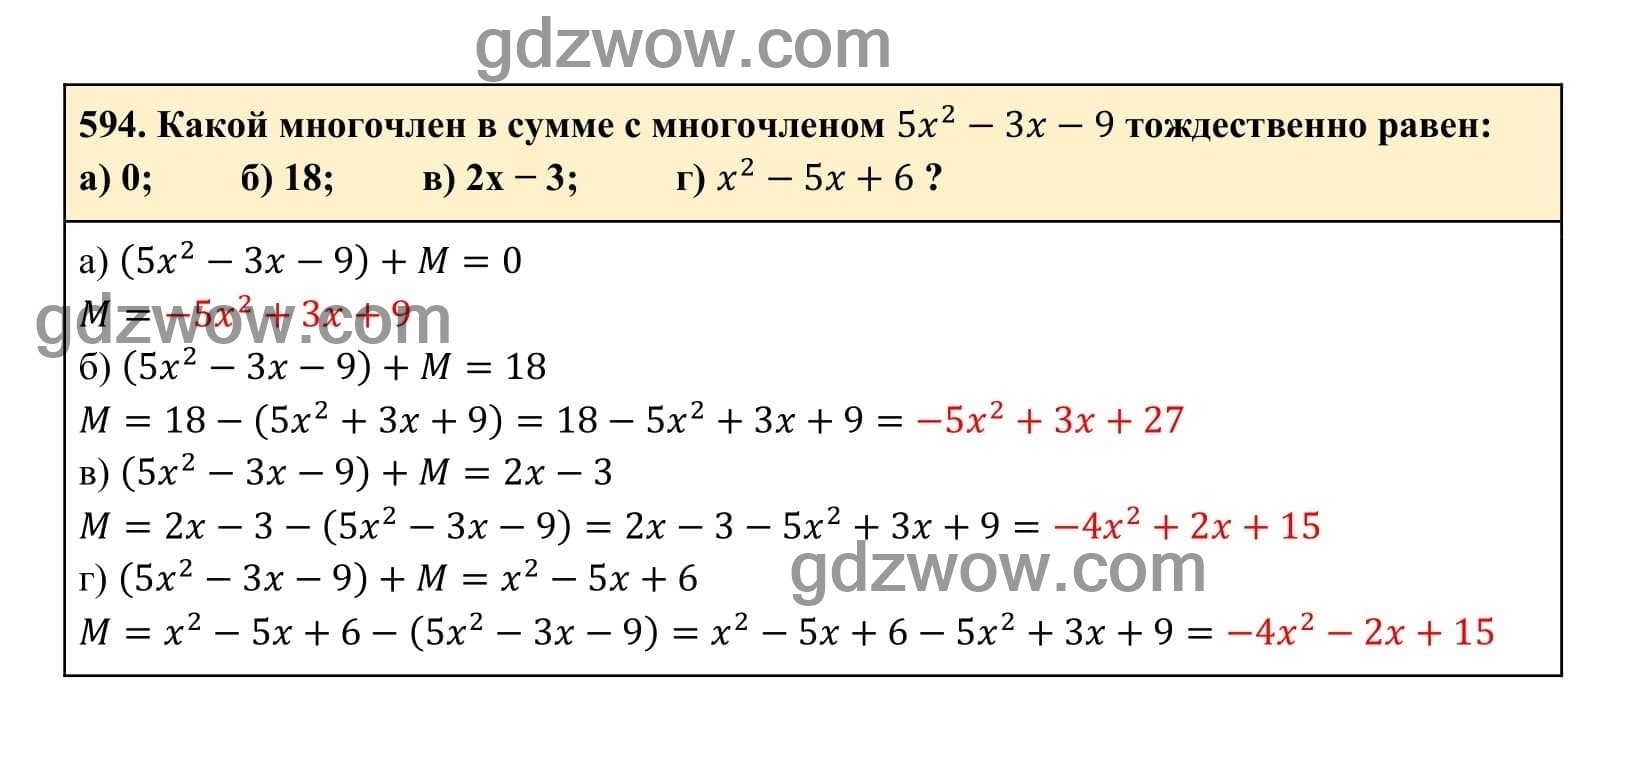 Упражнение 594 - ГДЗ по Алгебре 7 класс Учебник Макарычев (решебник) - GDZwow